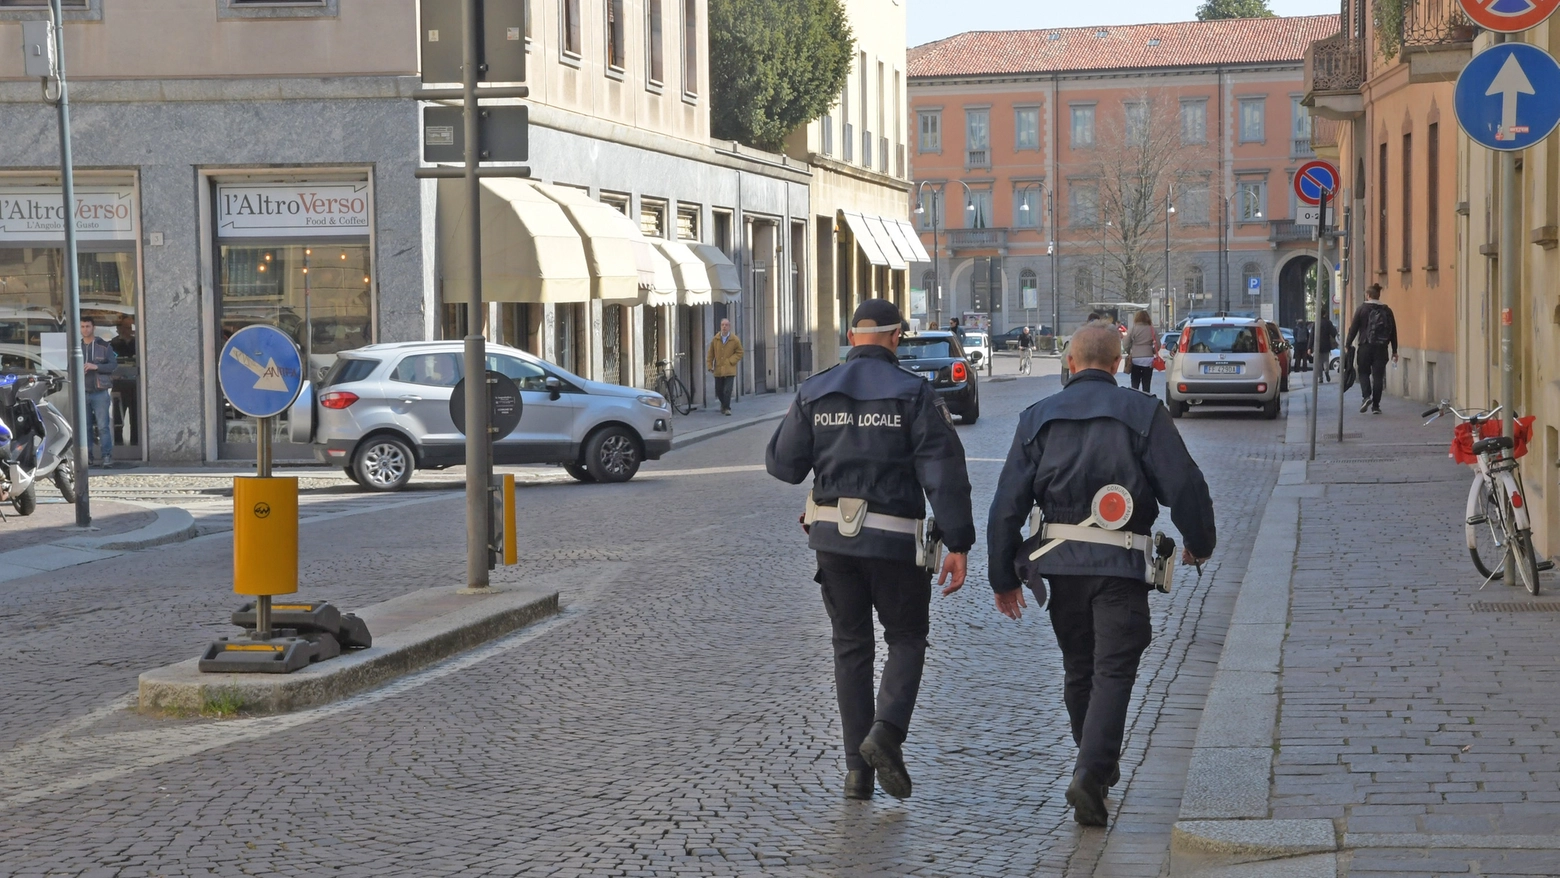 La polizia locale in centro a Pavia